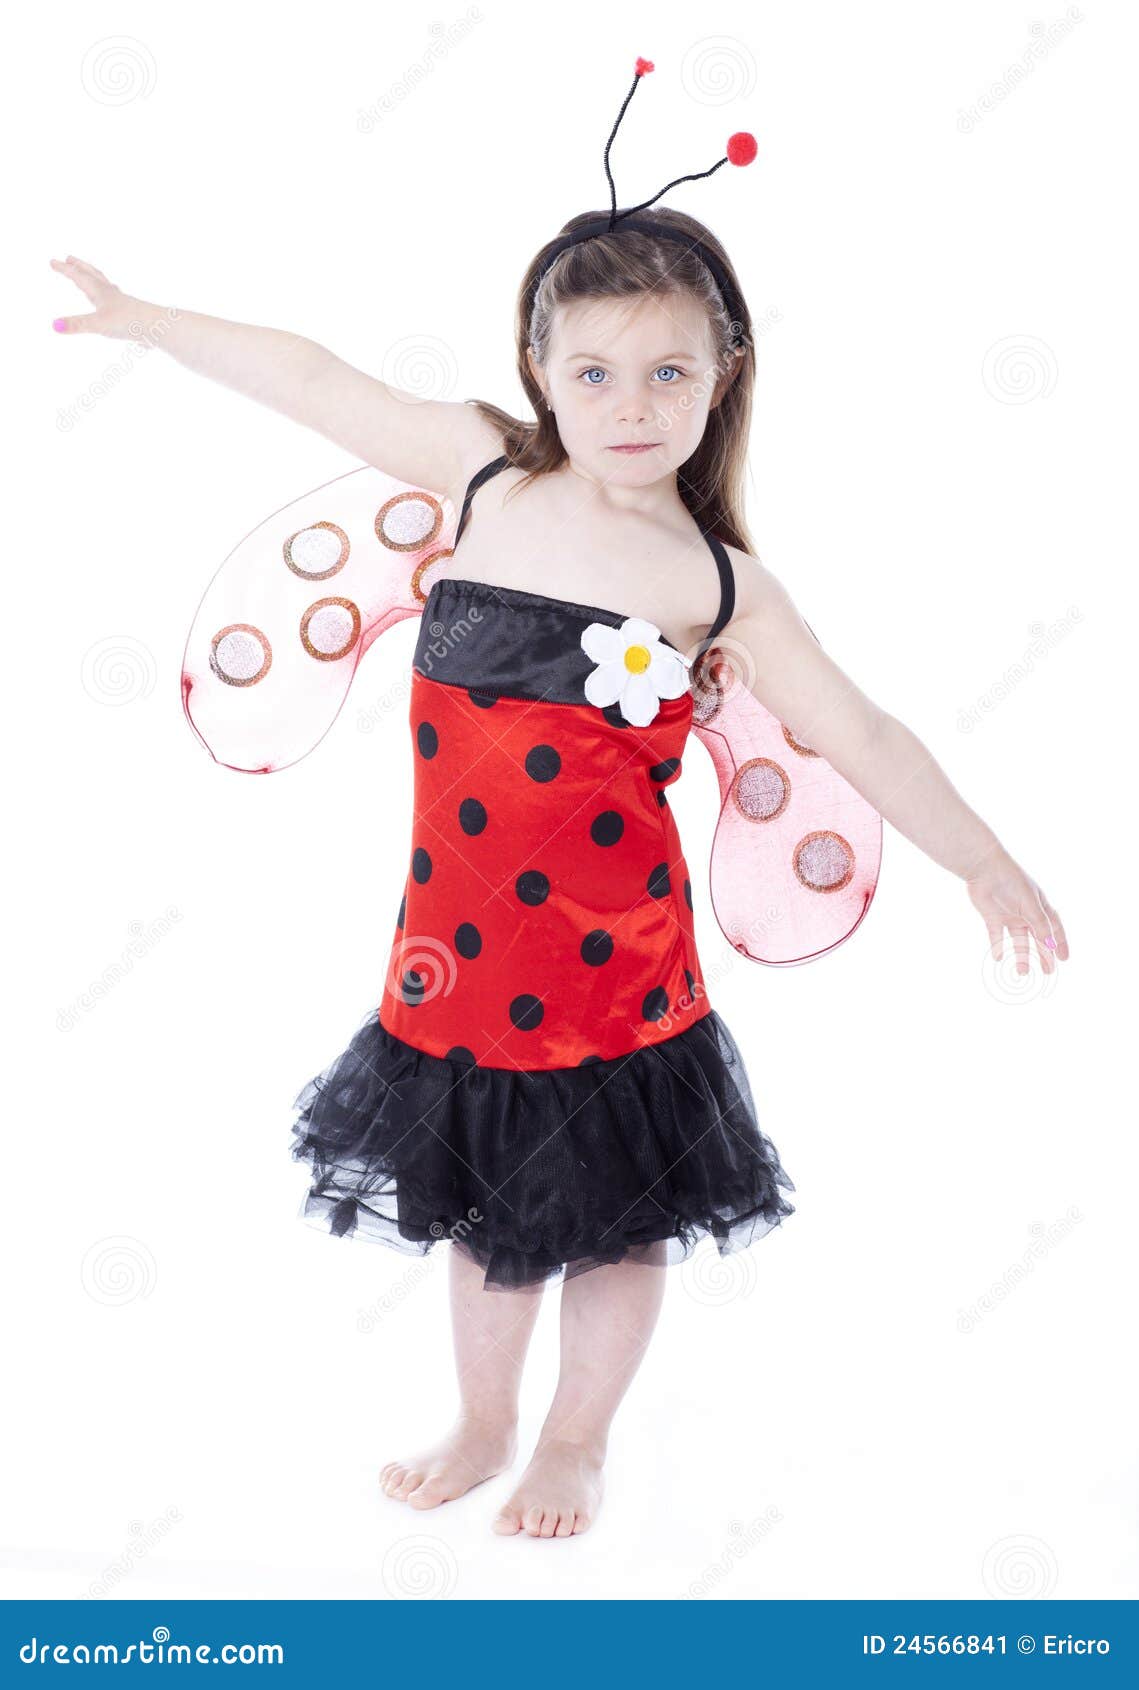 Bambina Adorabile in Costume Del Ladybug Immagine Stock - Immagine di  scarabeo, capelli: 24566841